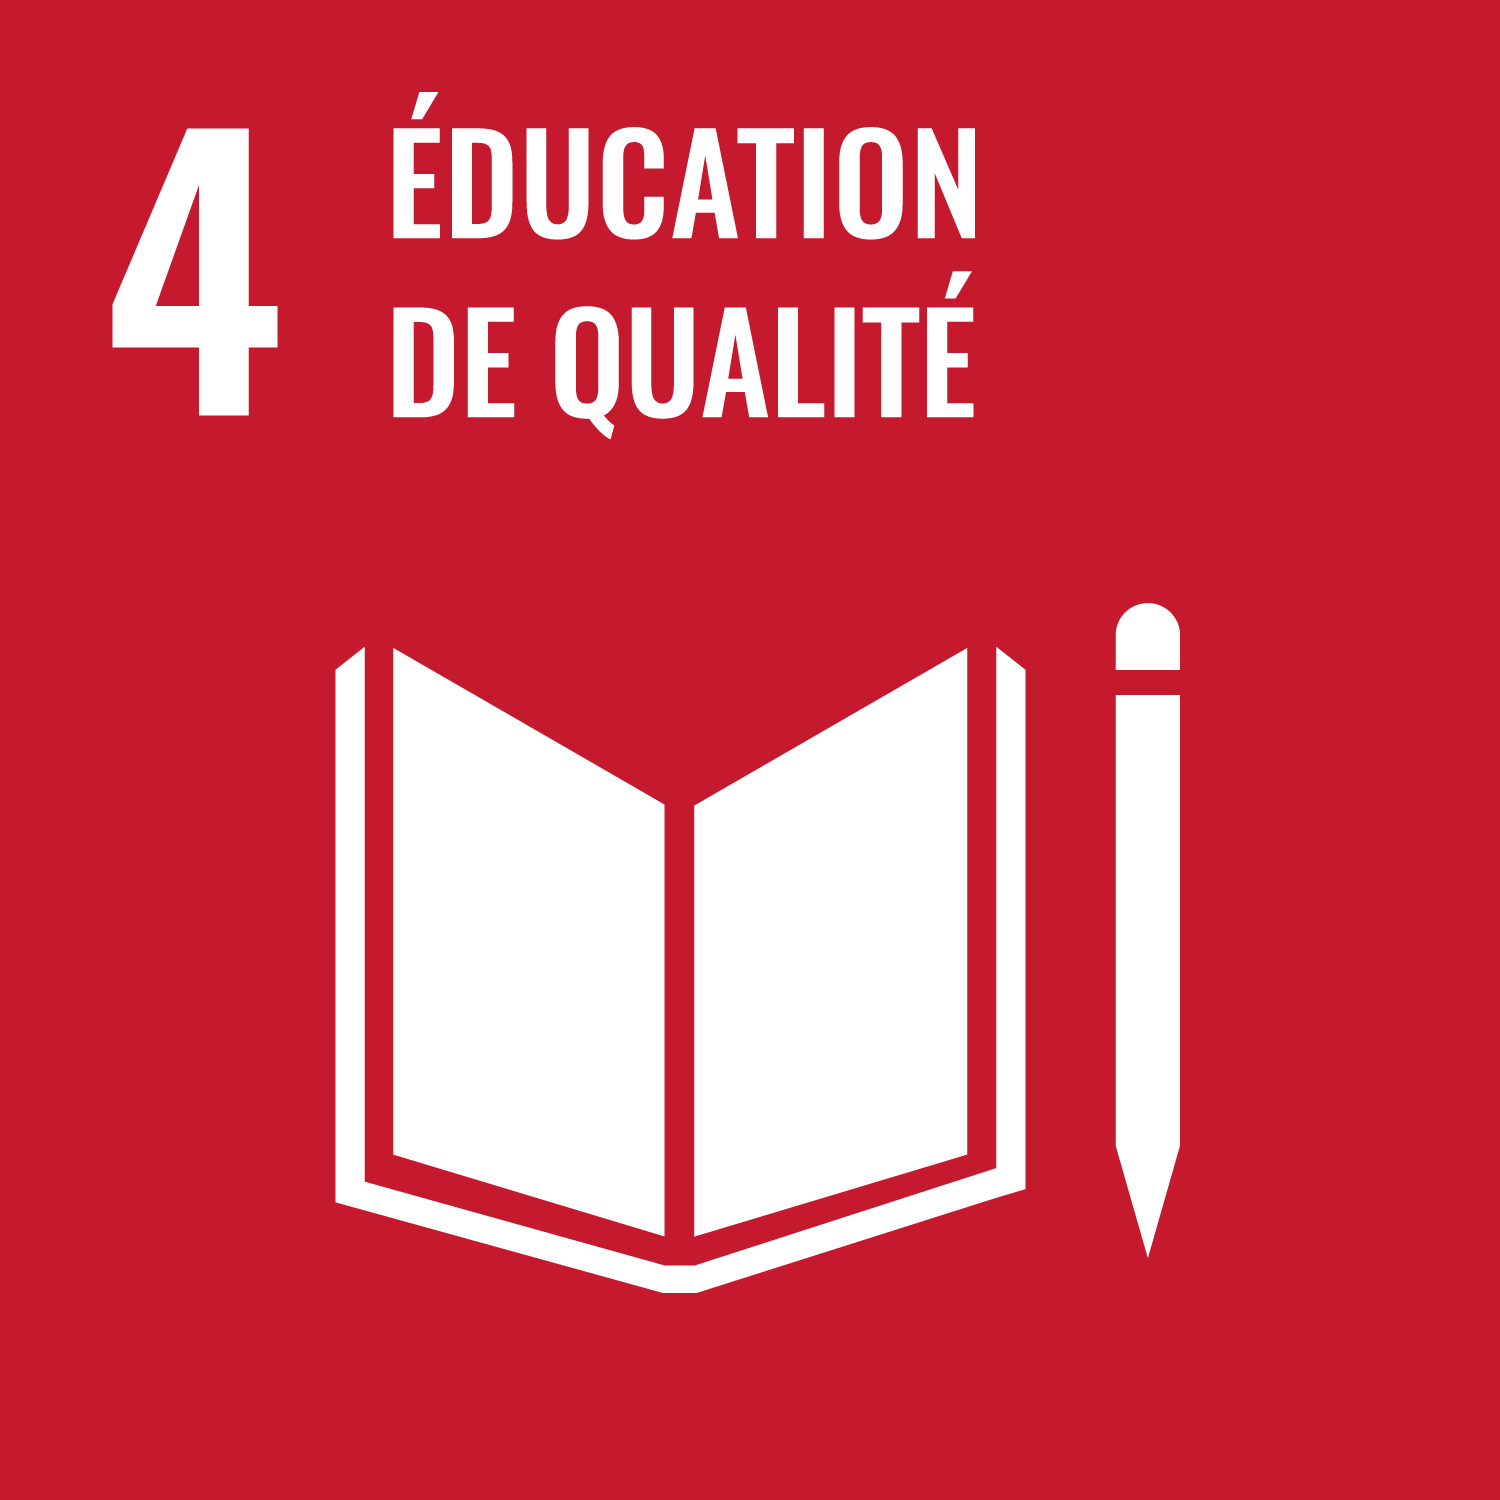 Objectif de développement durable 4: Education de qualité;